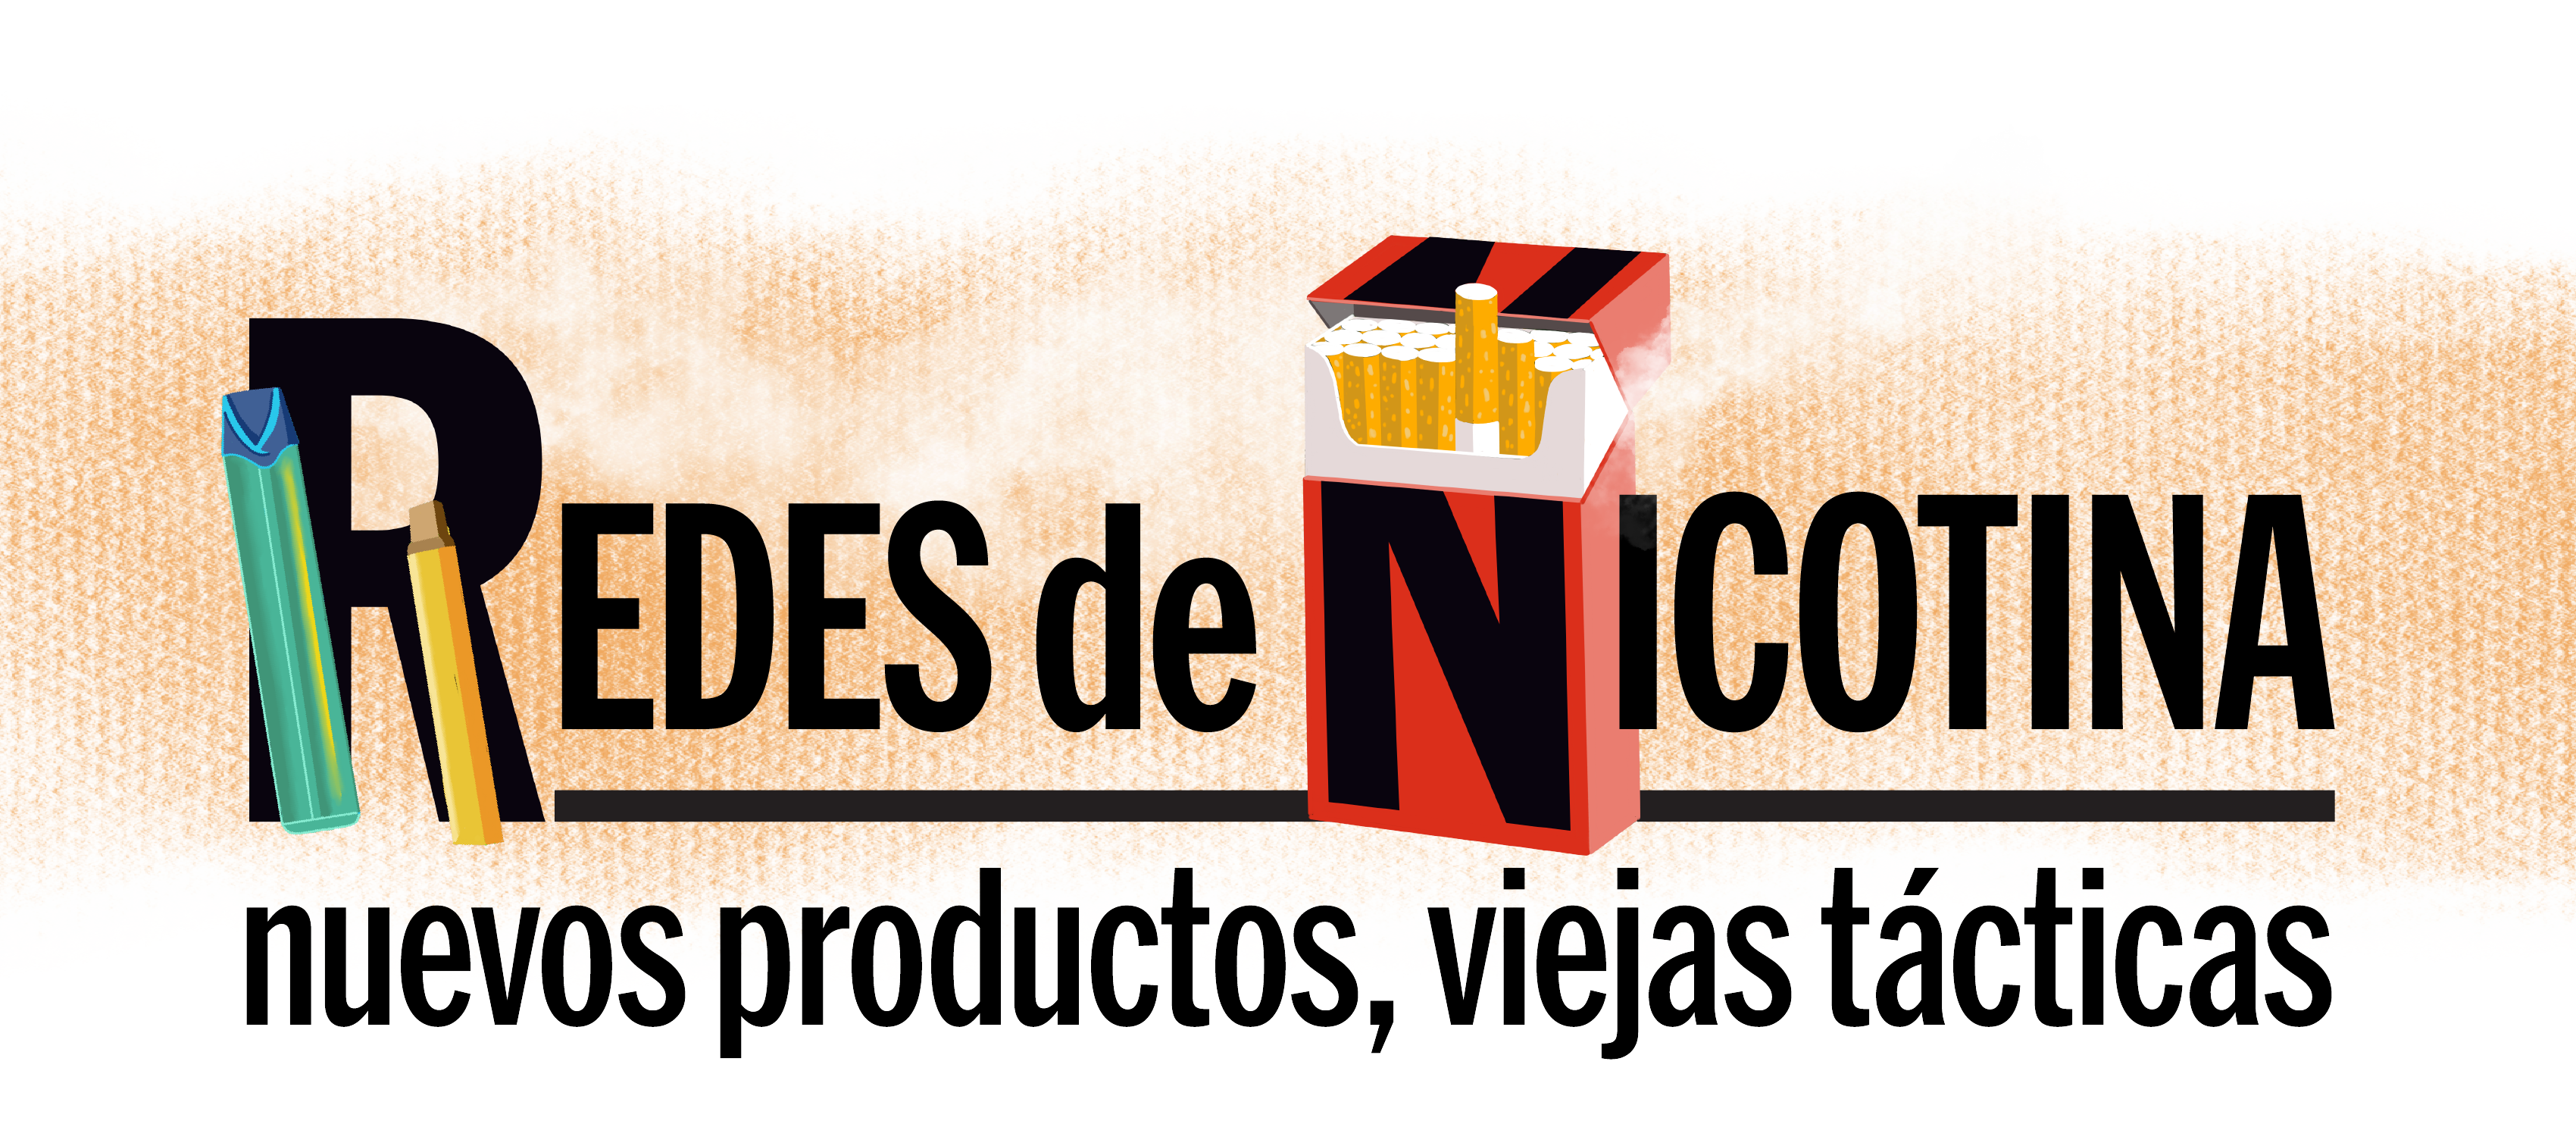 Logo de Redes de Nicotina